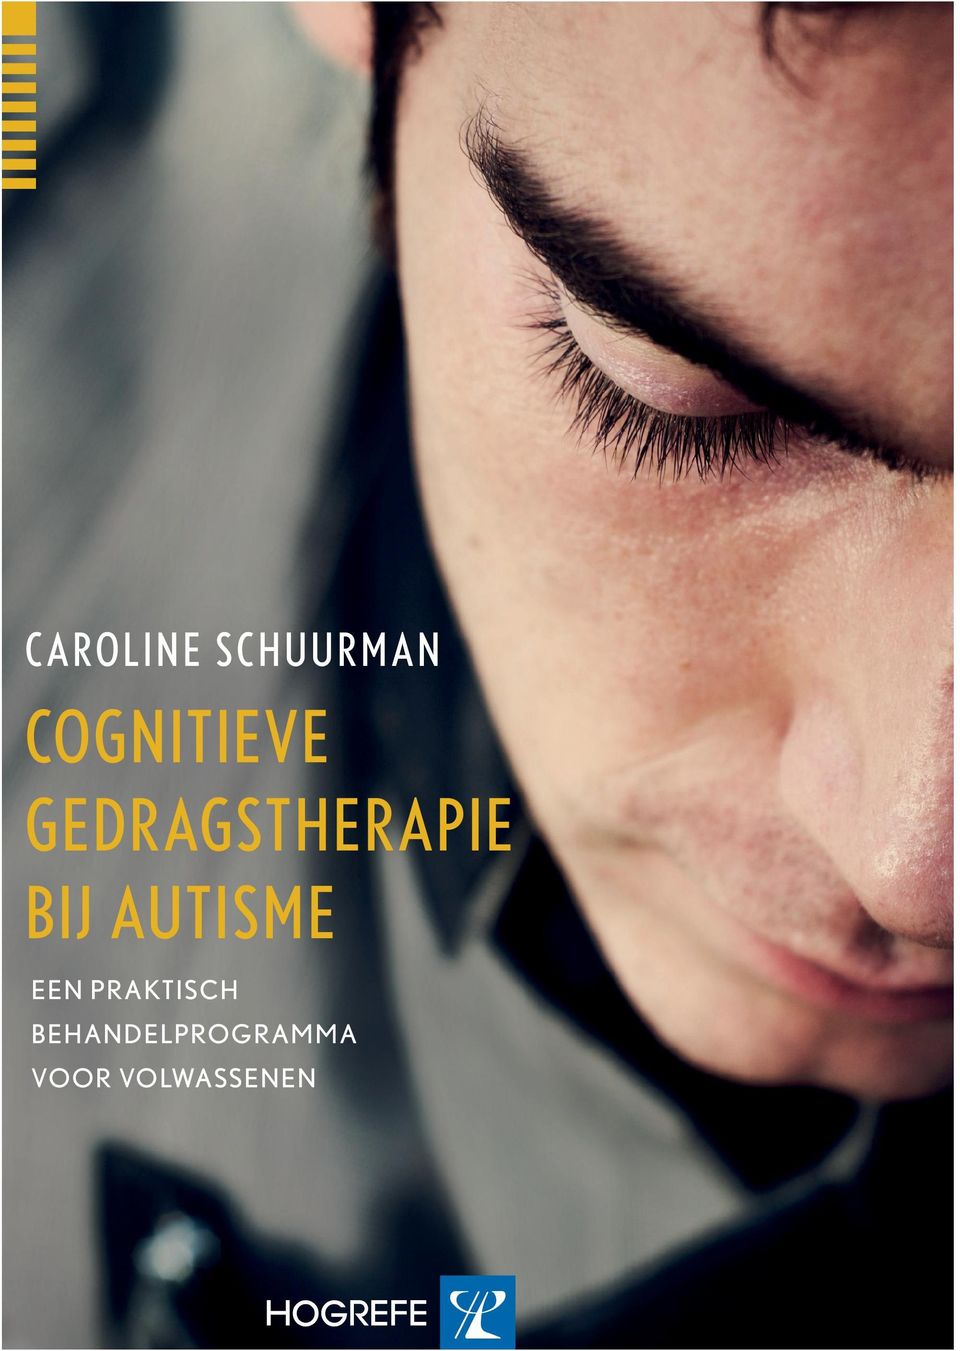 In het eerste deel biedt Schuurman een in troductie op autisme en cognitieve gedrags therapie en laat zij zien hoe cognitieve gedragstherapie kan worden gebruikt bij de behandeling van autisme.